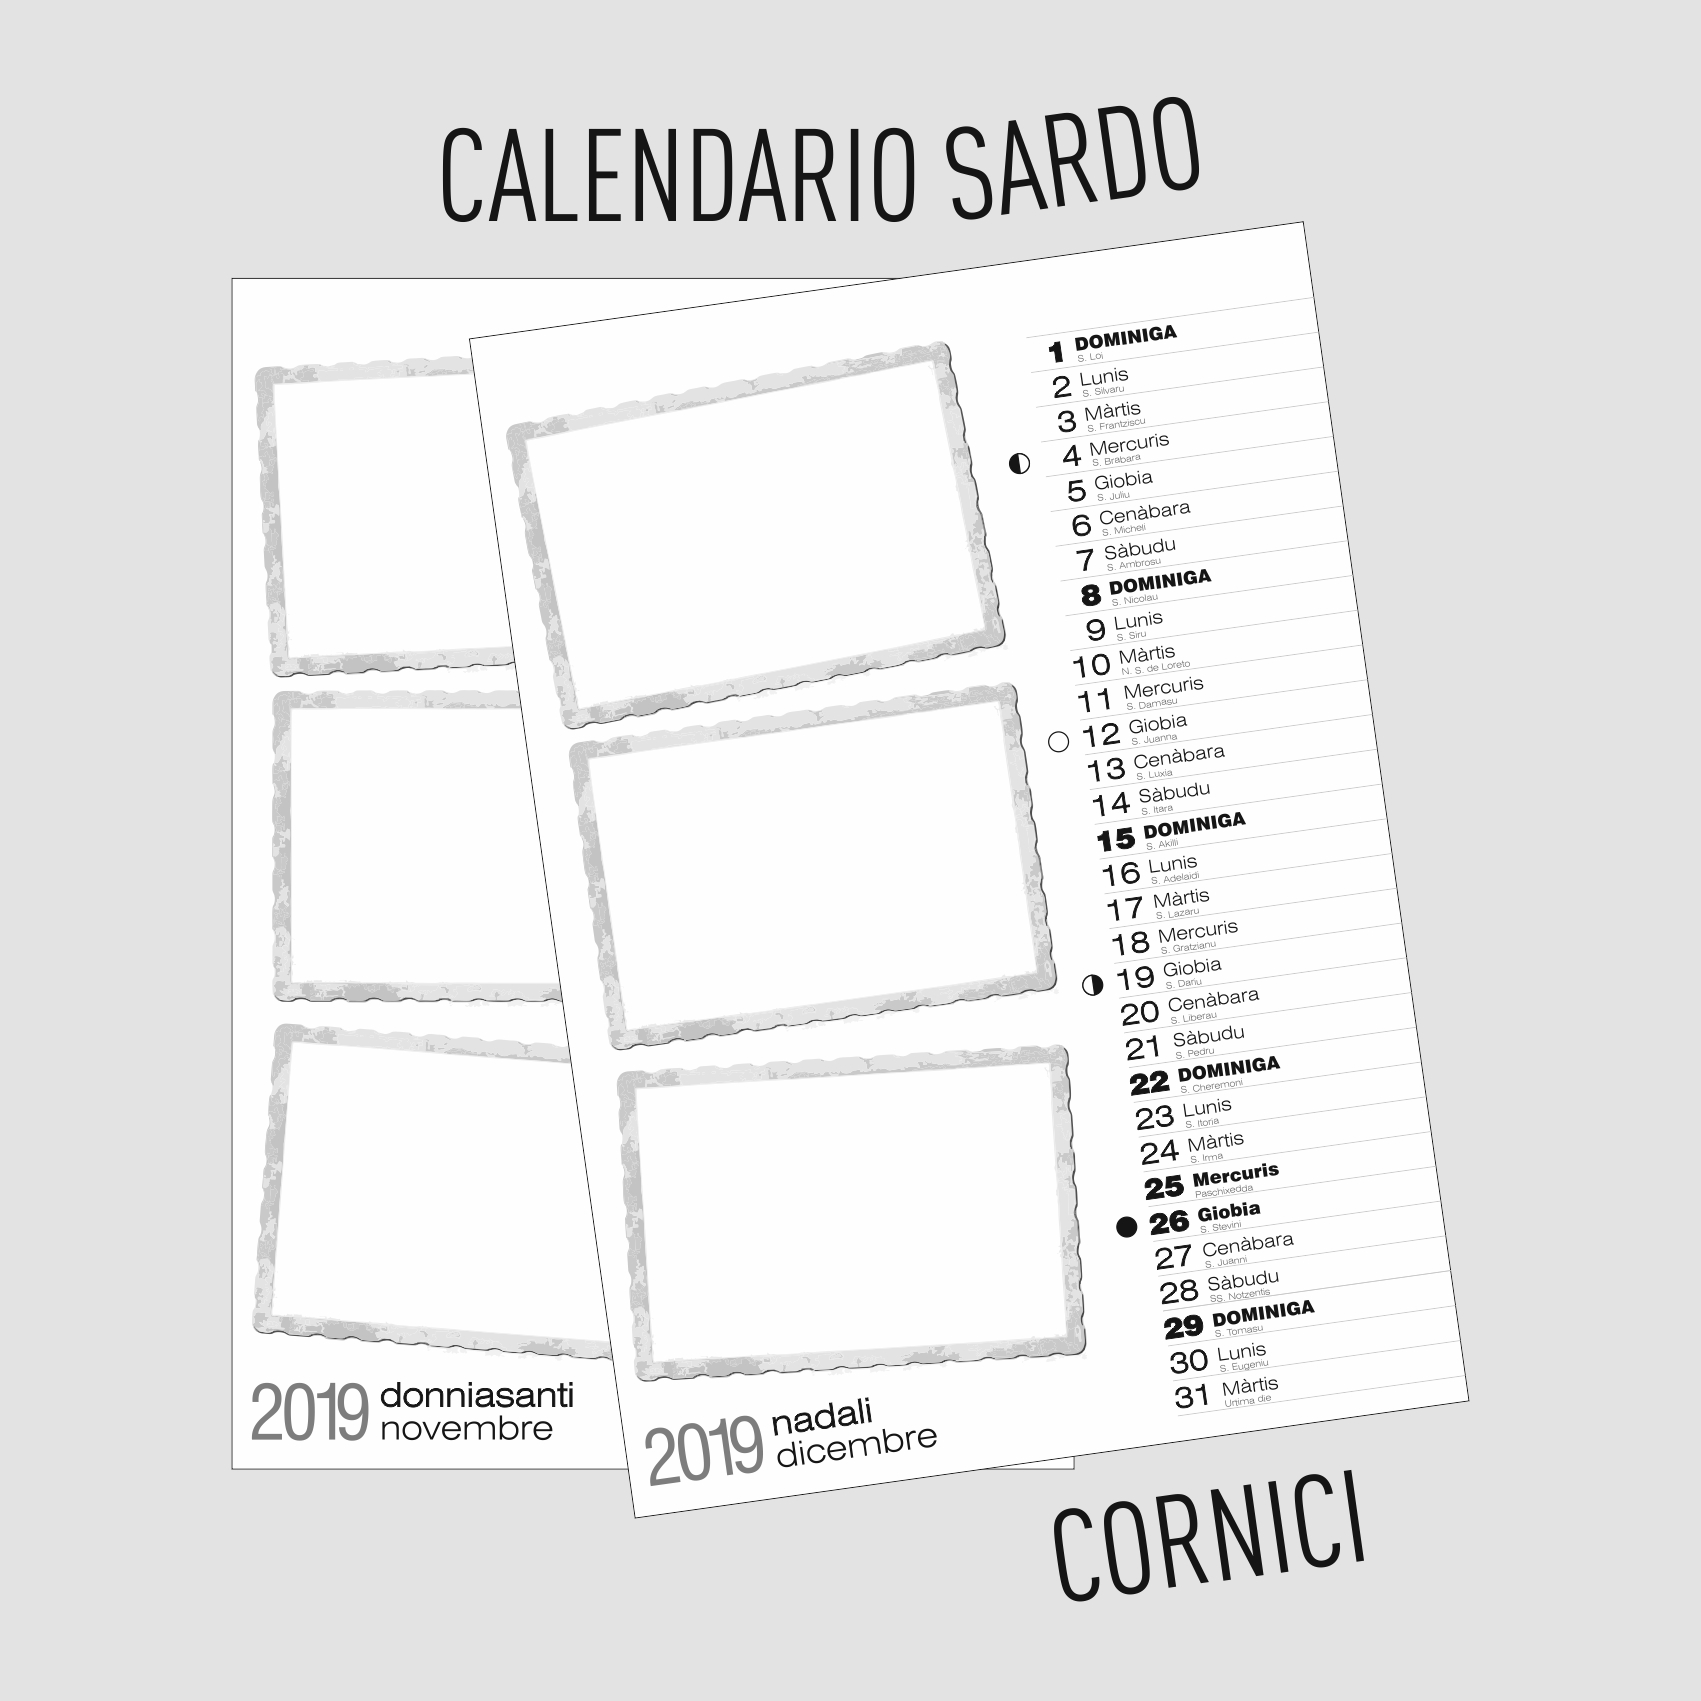 Calendario Sardo cornici